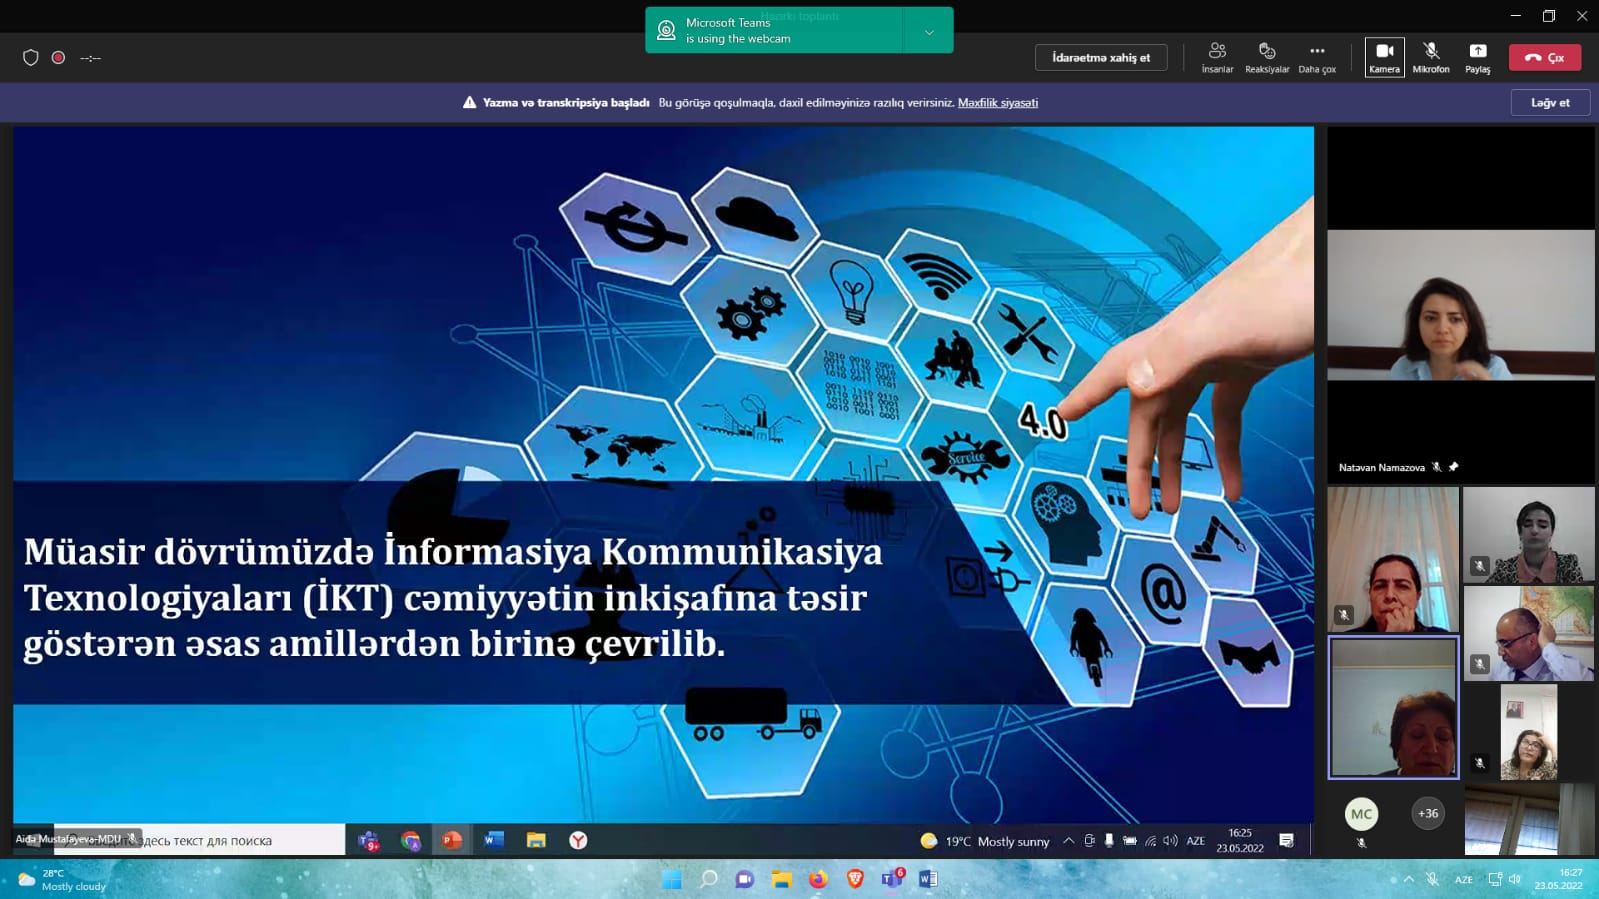 MDU-da Ümumdunya Telekommunikasiya və İnformasiya Cəmiyyəti Gününə həsr edilən seminar keçirilib (FOTO)